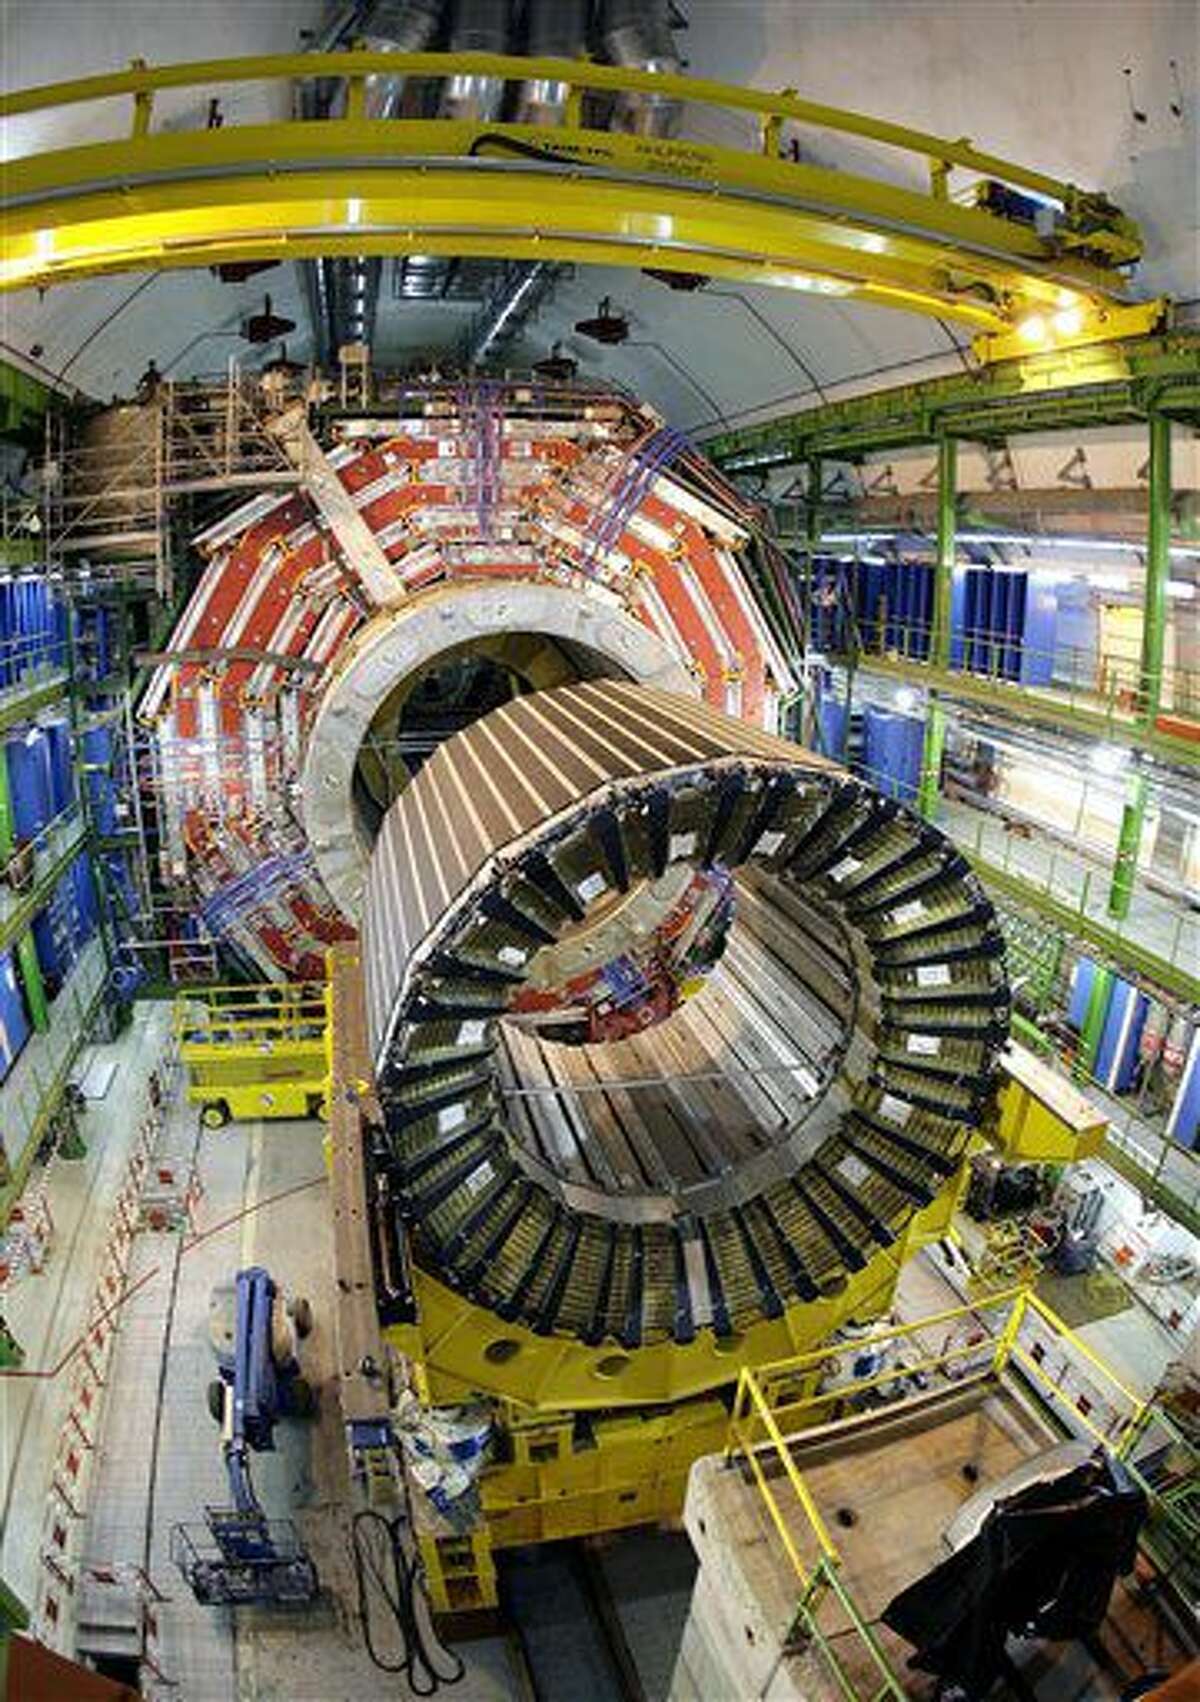 ARCHIVO - Fotografía de archivo del 22 de marzo de 2007 muestra el núcleo del superconductor solenoide magnético más grande del mundo en el acelerador de partículas del Gran Colisionador de Hadrones de la Organización Europea para la Energía Nuclear, en Ginebra, Suiza. (AP Foto/Keystone, Martial Trezzini, archivo)